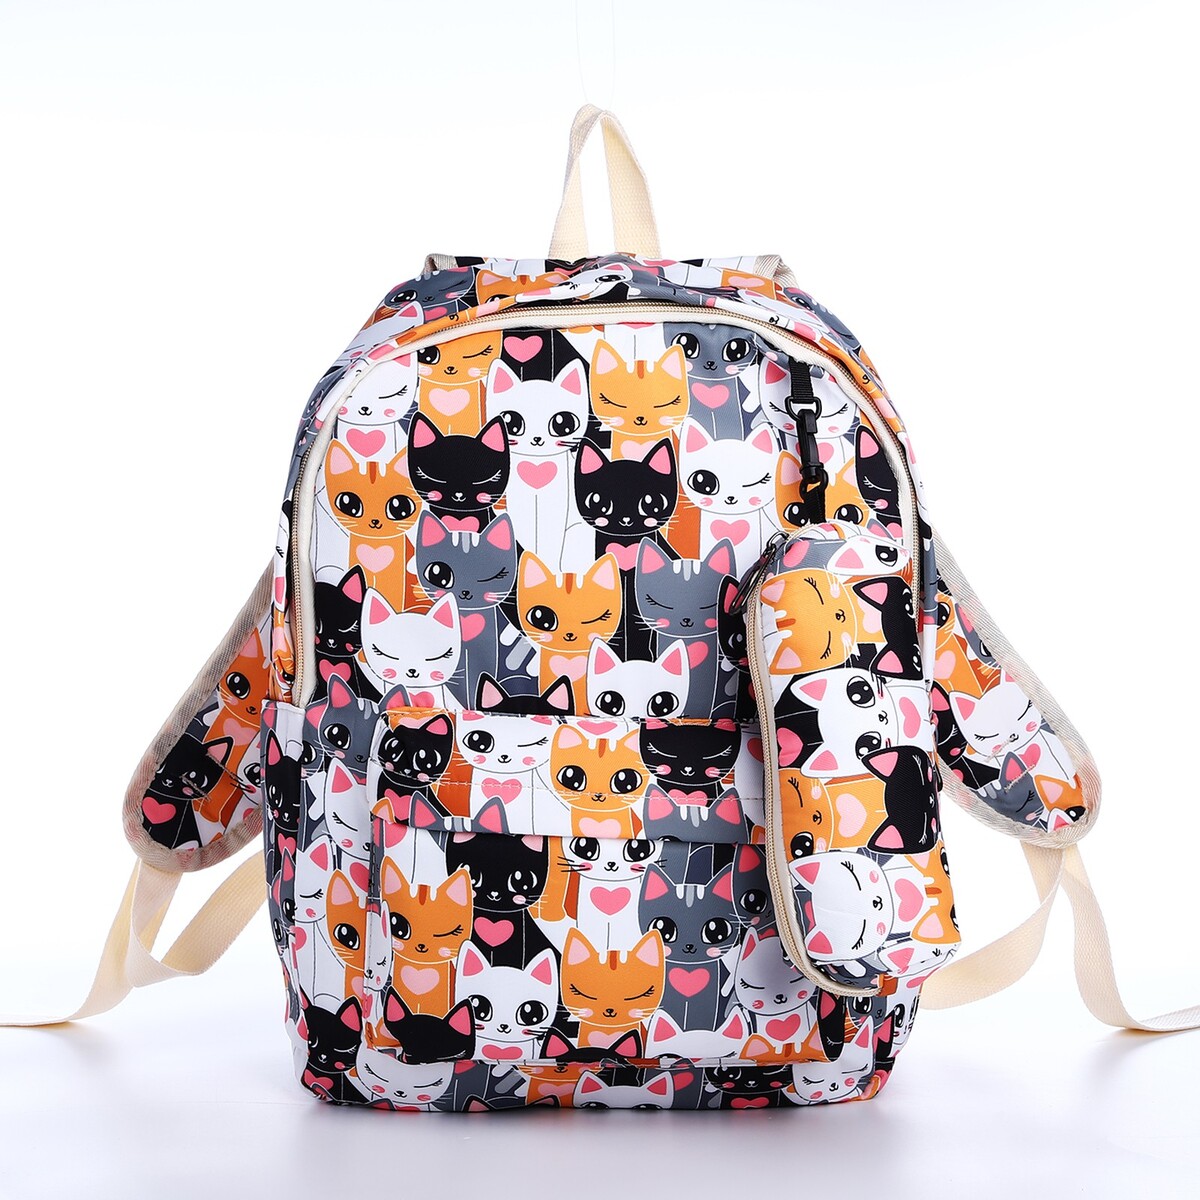 Рюкзак школьный из текстиля на молнии, 3 кармана, пенал, цвет разноцветный/оранжевый рюкзак школьный из текстиля на молнии 3 кармана пенал белый разно ный